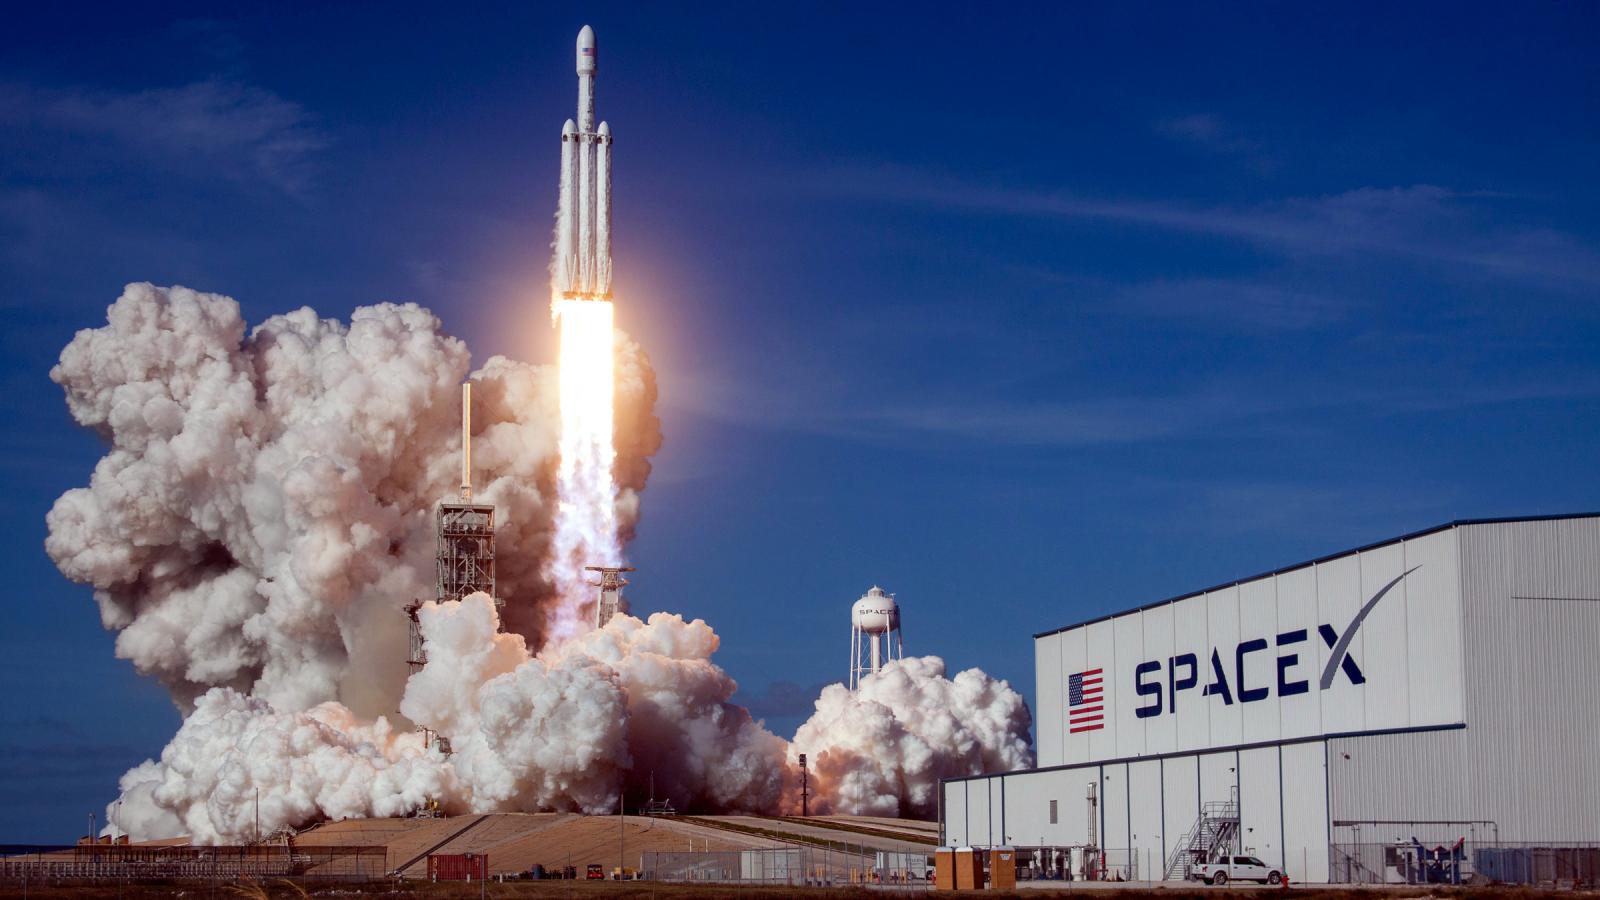 SpaceX đã tiếp tục bổ sung thêm 60 vệ tinh Starlink lên vũ trụ